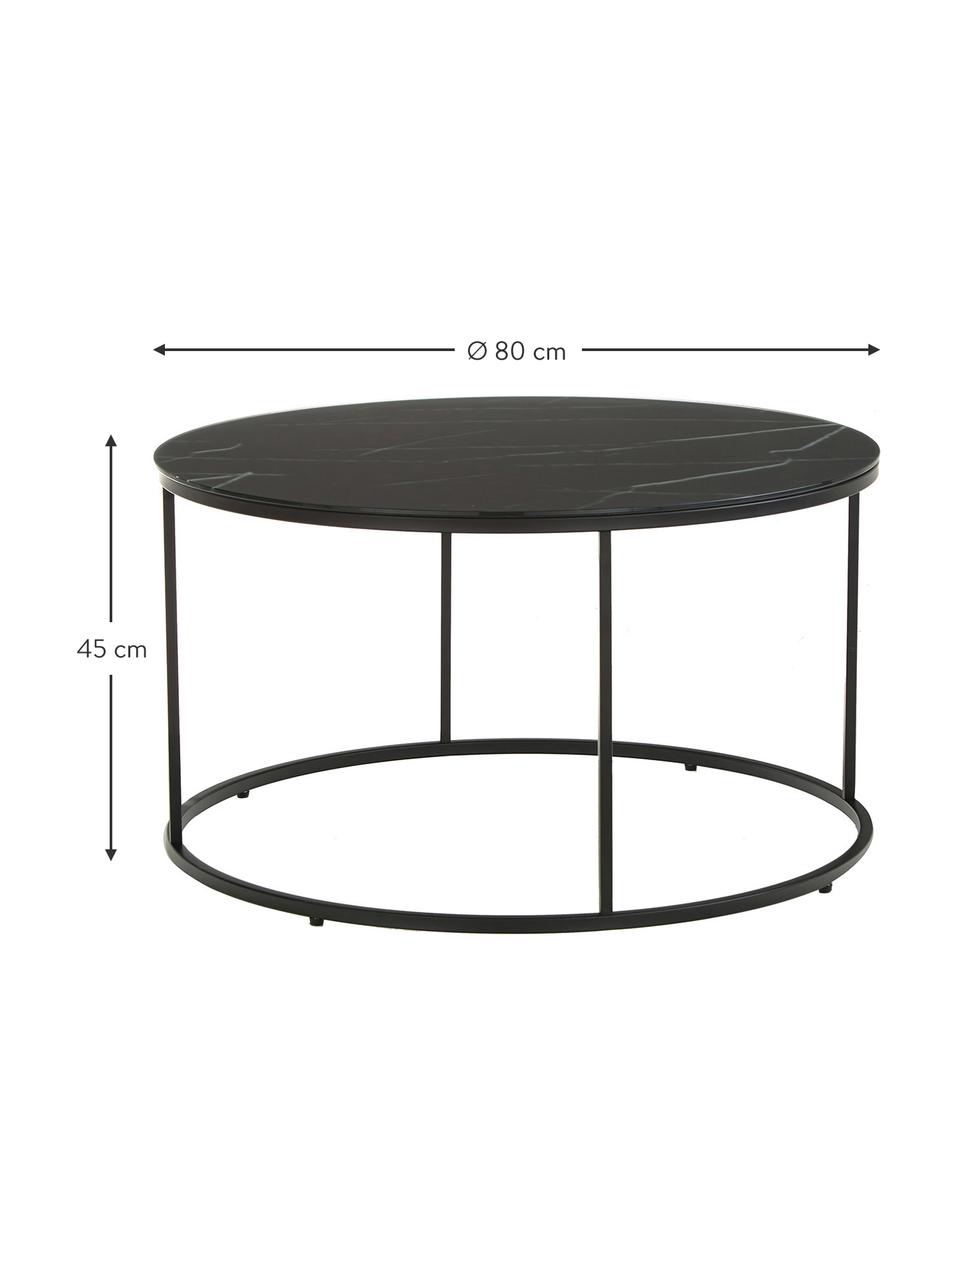 Kulatý konferenční stolek s mramorovanou skleněnou deskou Antigua, Mramorový vzhled, černá, Ø 80 cm